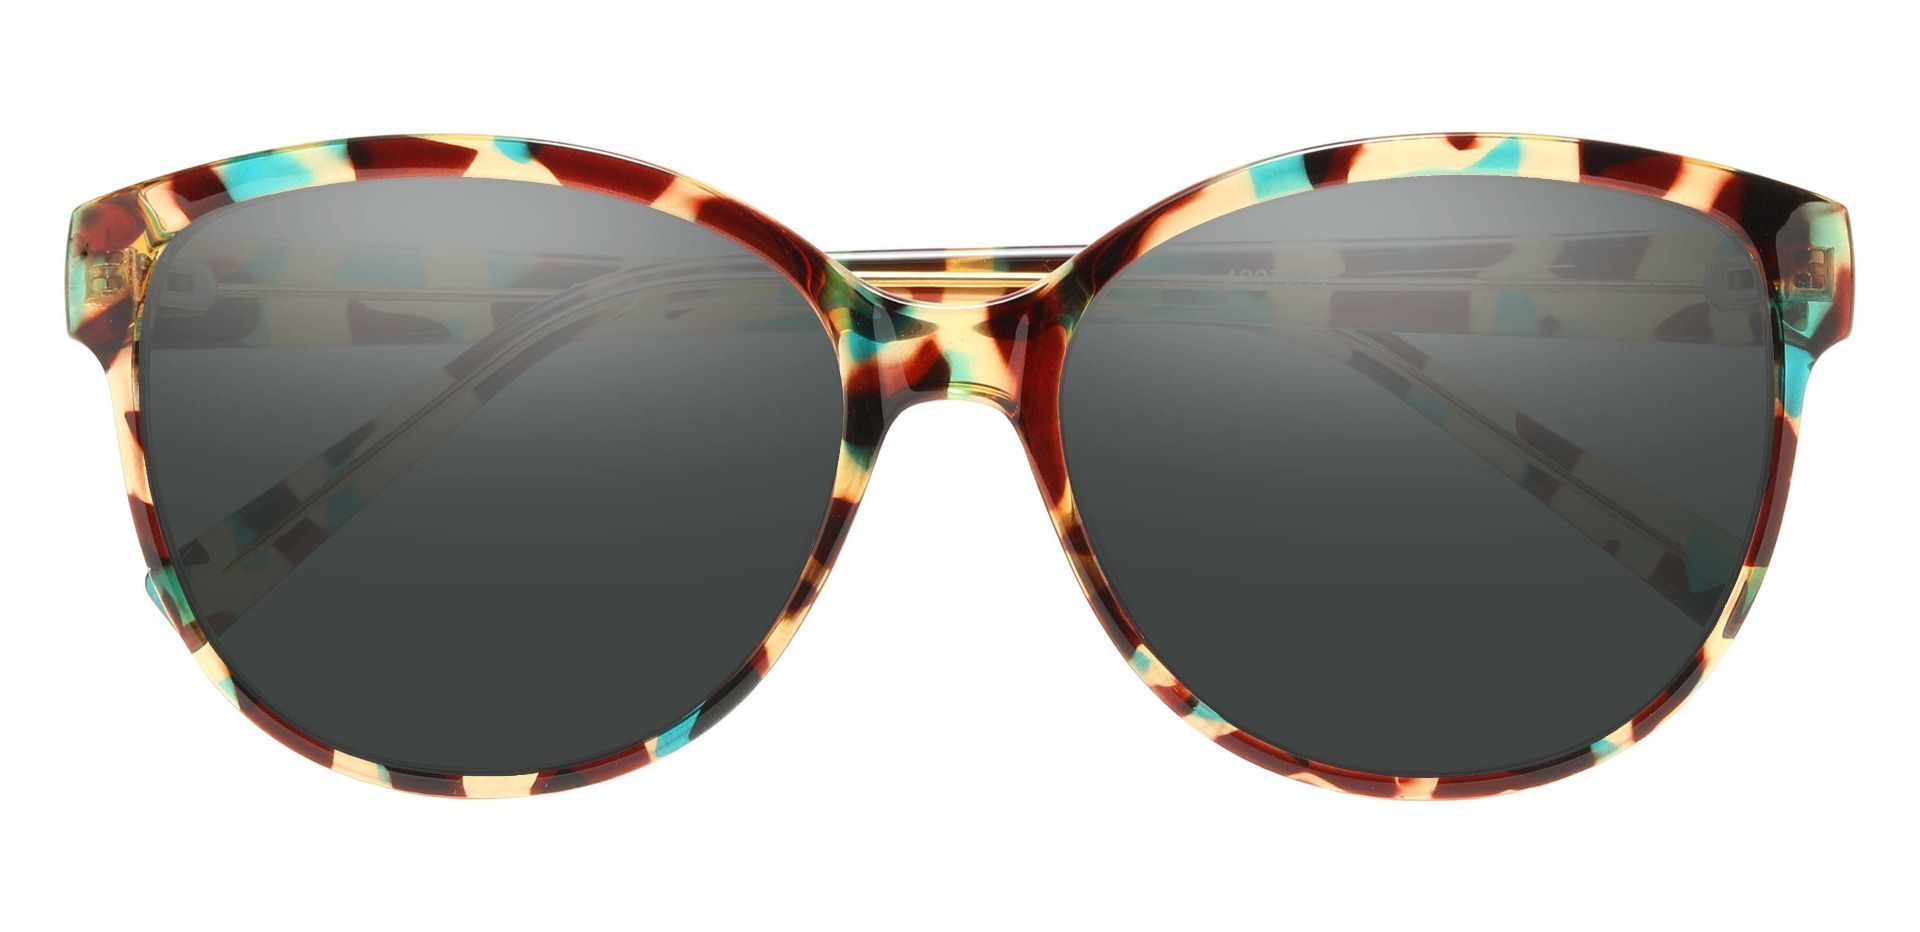 Rabia Oval Prescription Sunglasses - Multi Color Frame With Gray Lenses